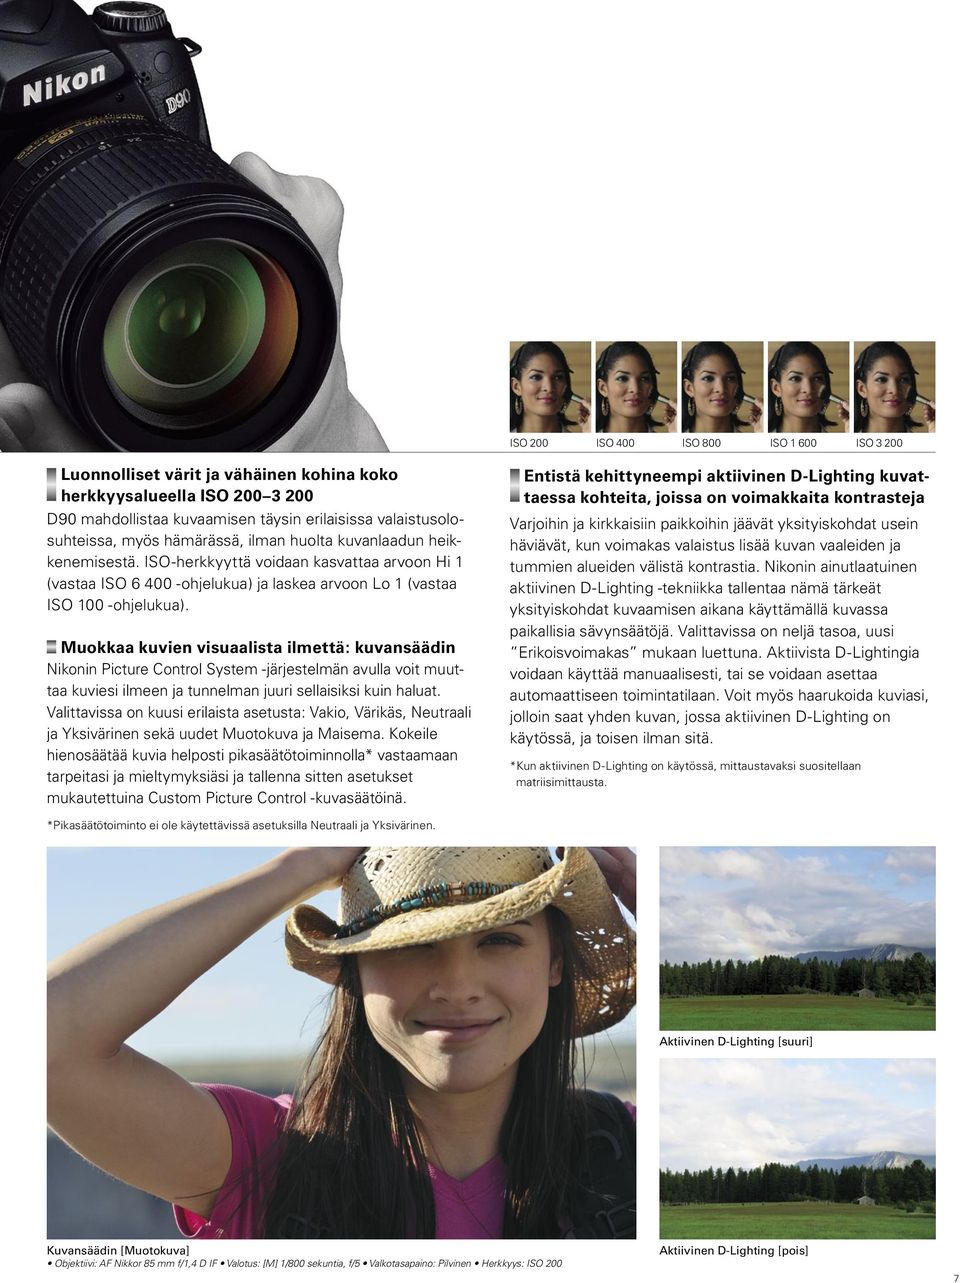 Muokkaa kuvien visuaalista ilmettä: kuvansäädin Nikonin Picture Control System -järjestelmän avulla voit muuttaa kuviesi ilmeen ja tunnelman juuri sellaisiksi kuin haluat.